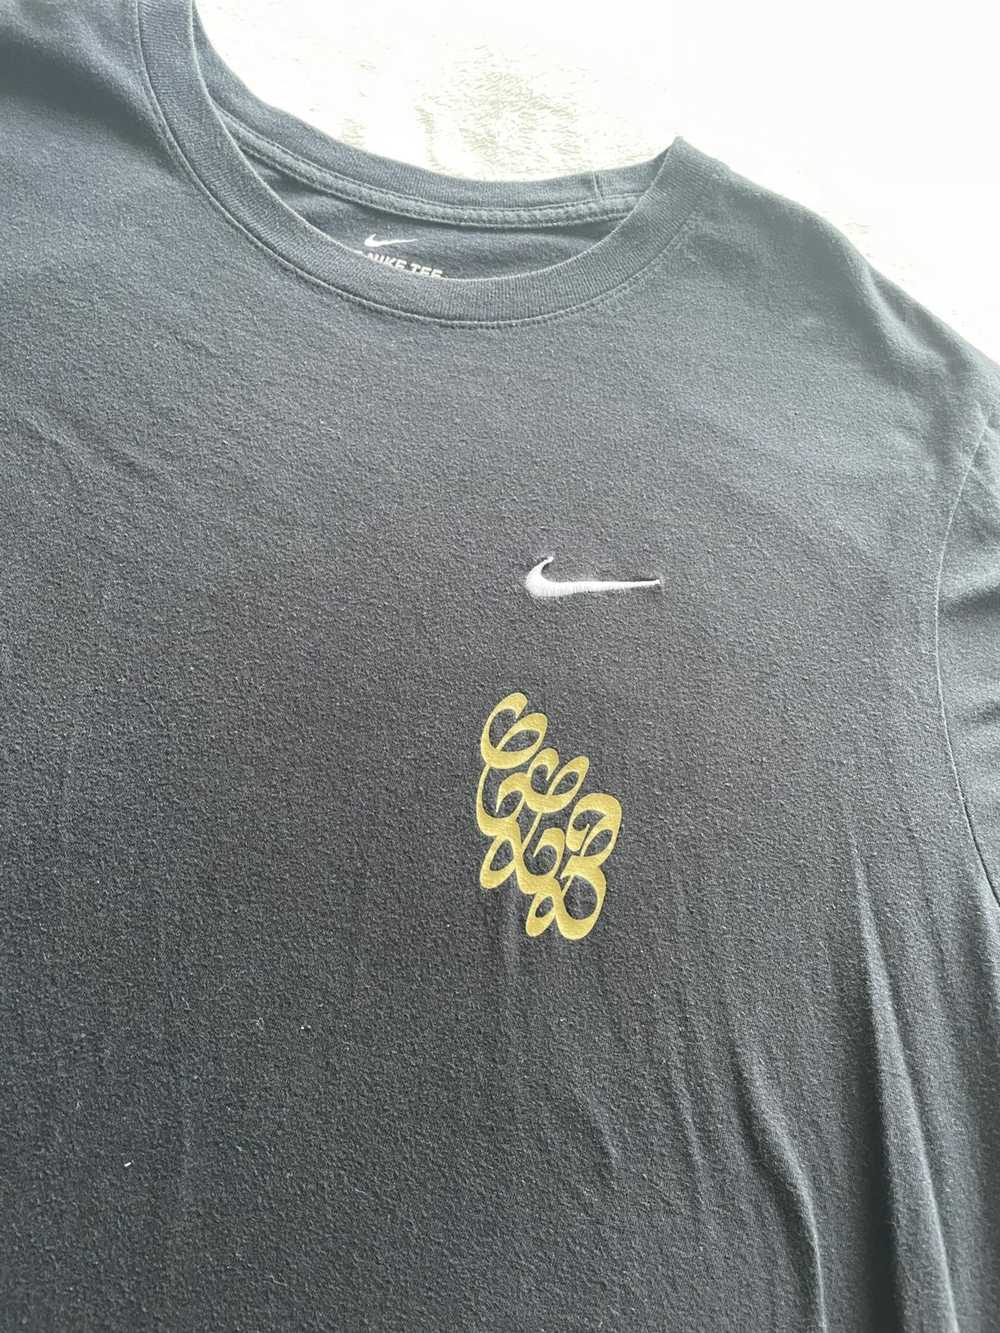 Drake × Nike Drake x Nike CLB Shirt - image 3